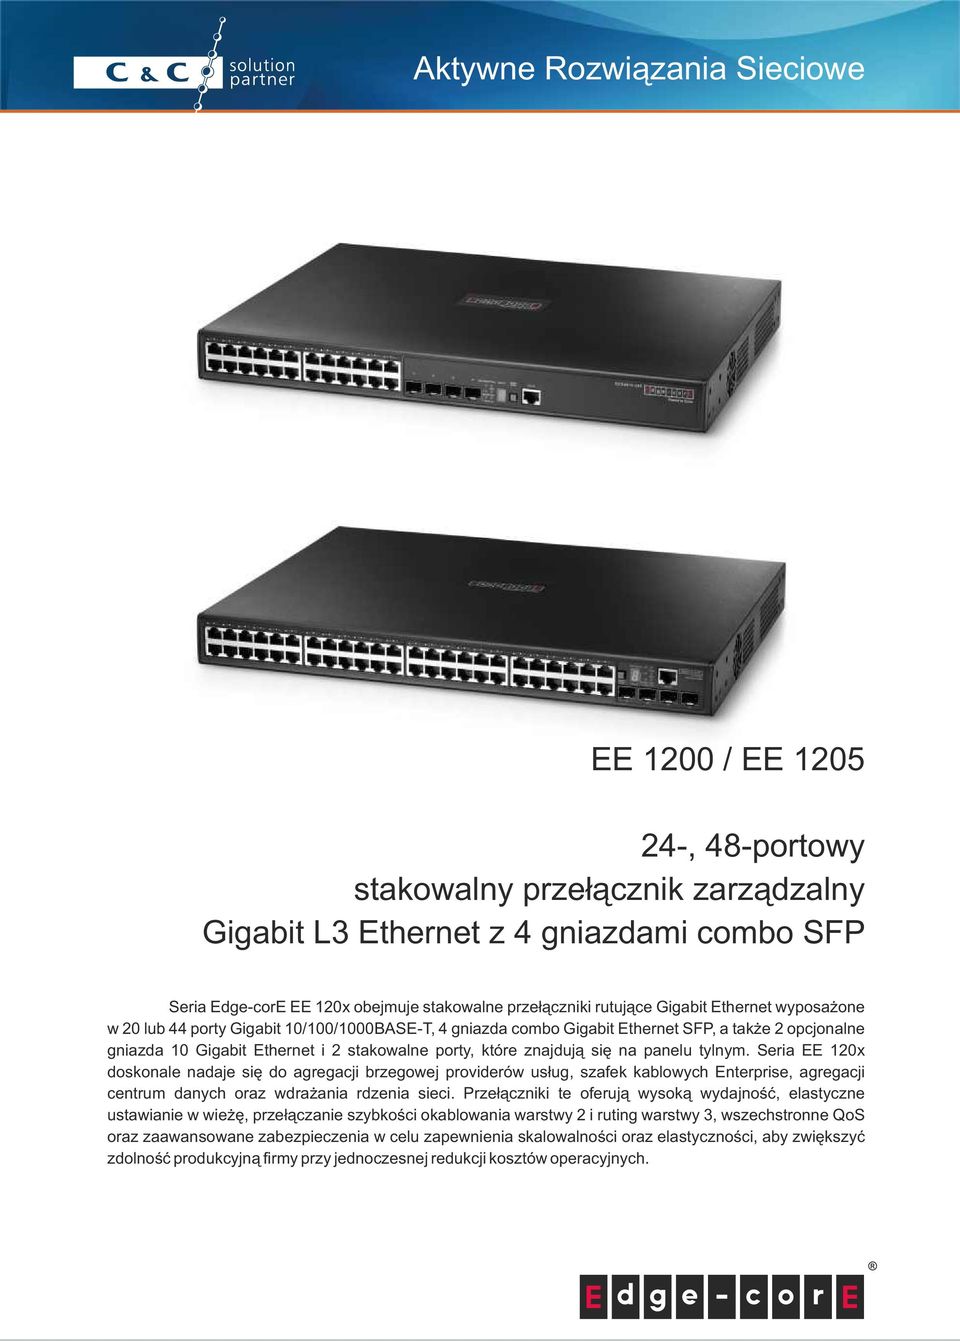 tylnym. Seria EE 120x doskonale nadaje się do agregacji brzegowej providerów usług, szafek kablowych Enterprise, agregacji centrum danych oraz wdrażania rdzenia sieci.